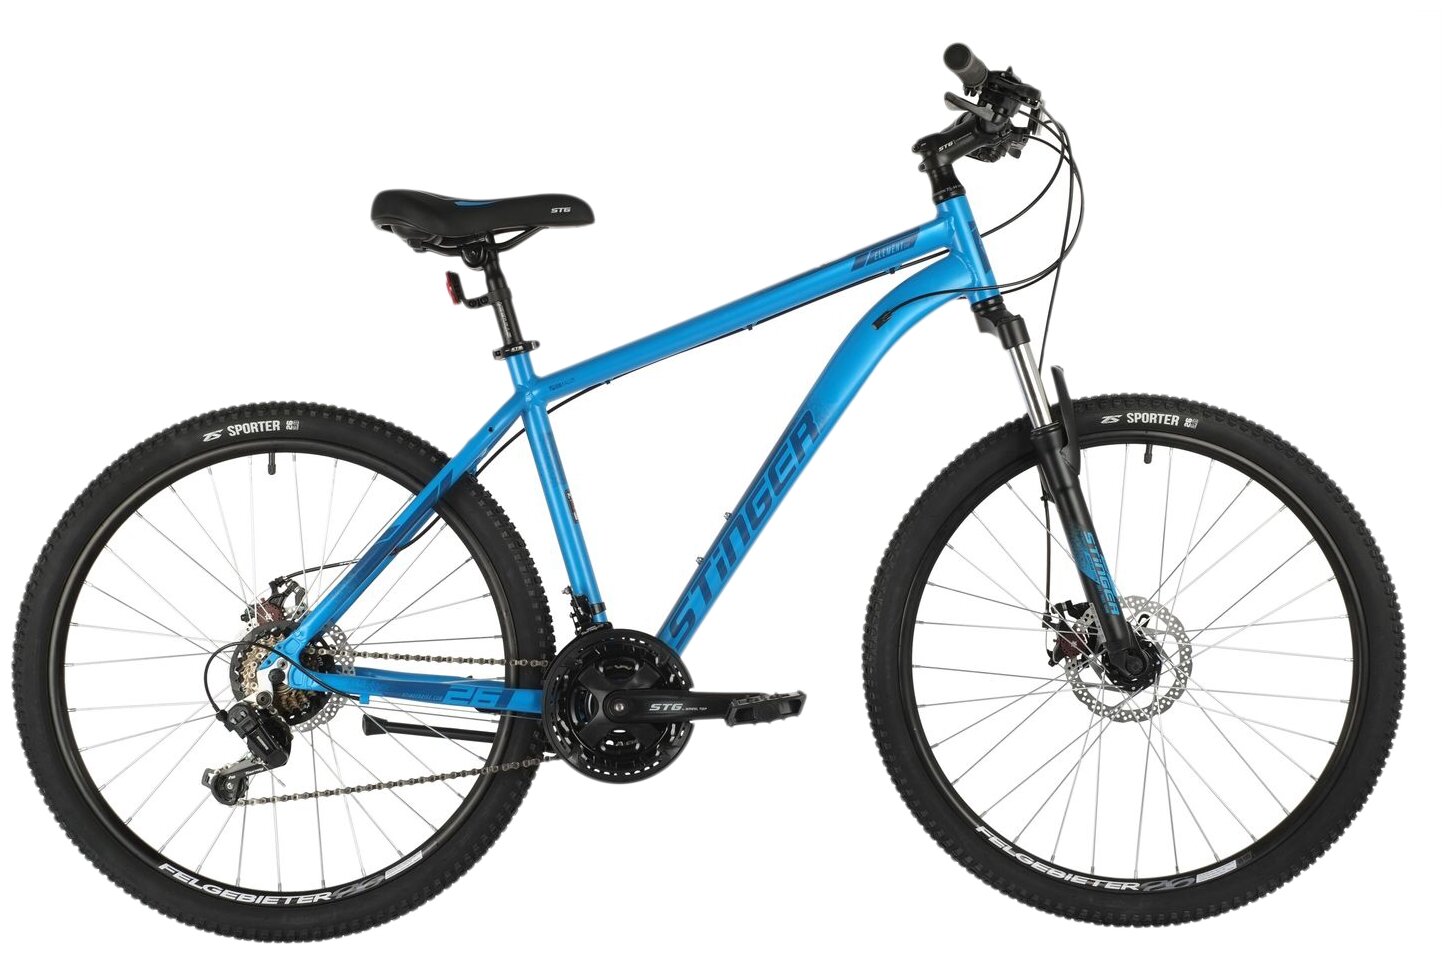 Горный (MTB) велосипед Stinger Element Evo 26 (2021)